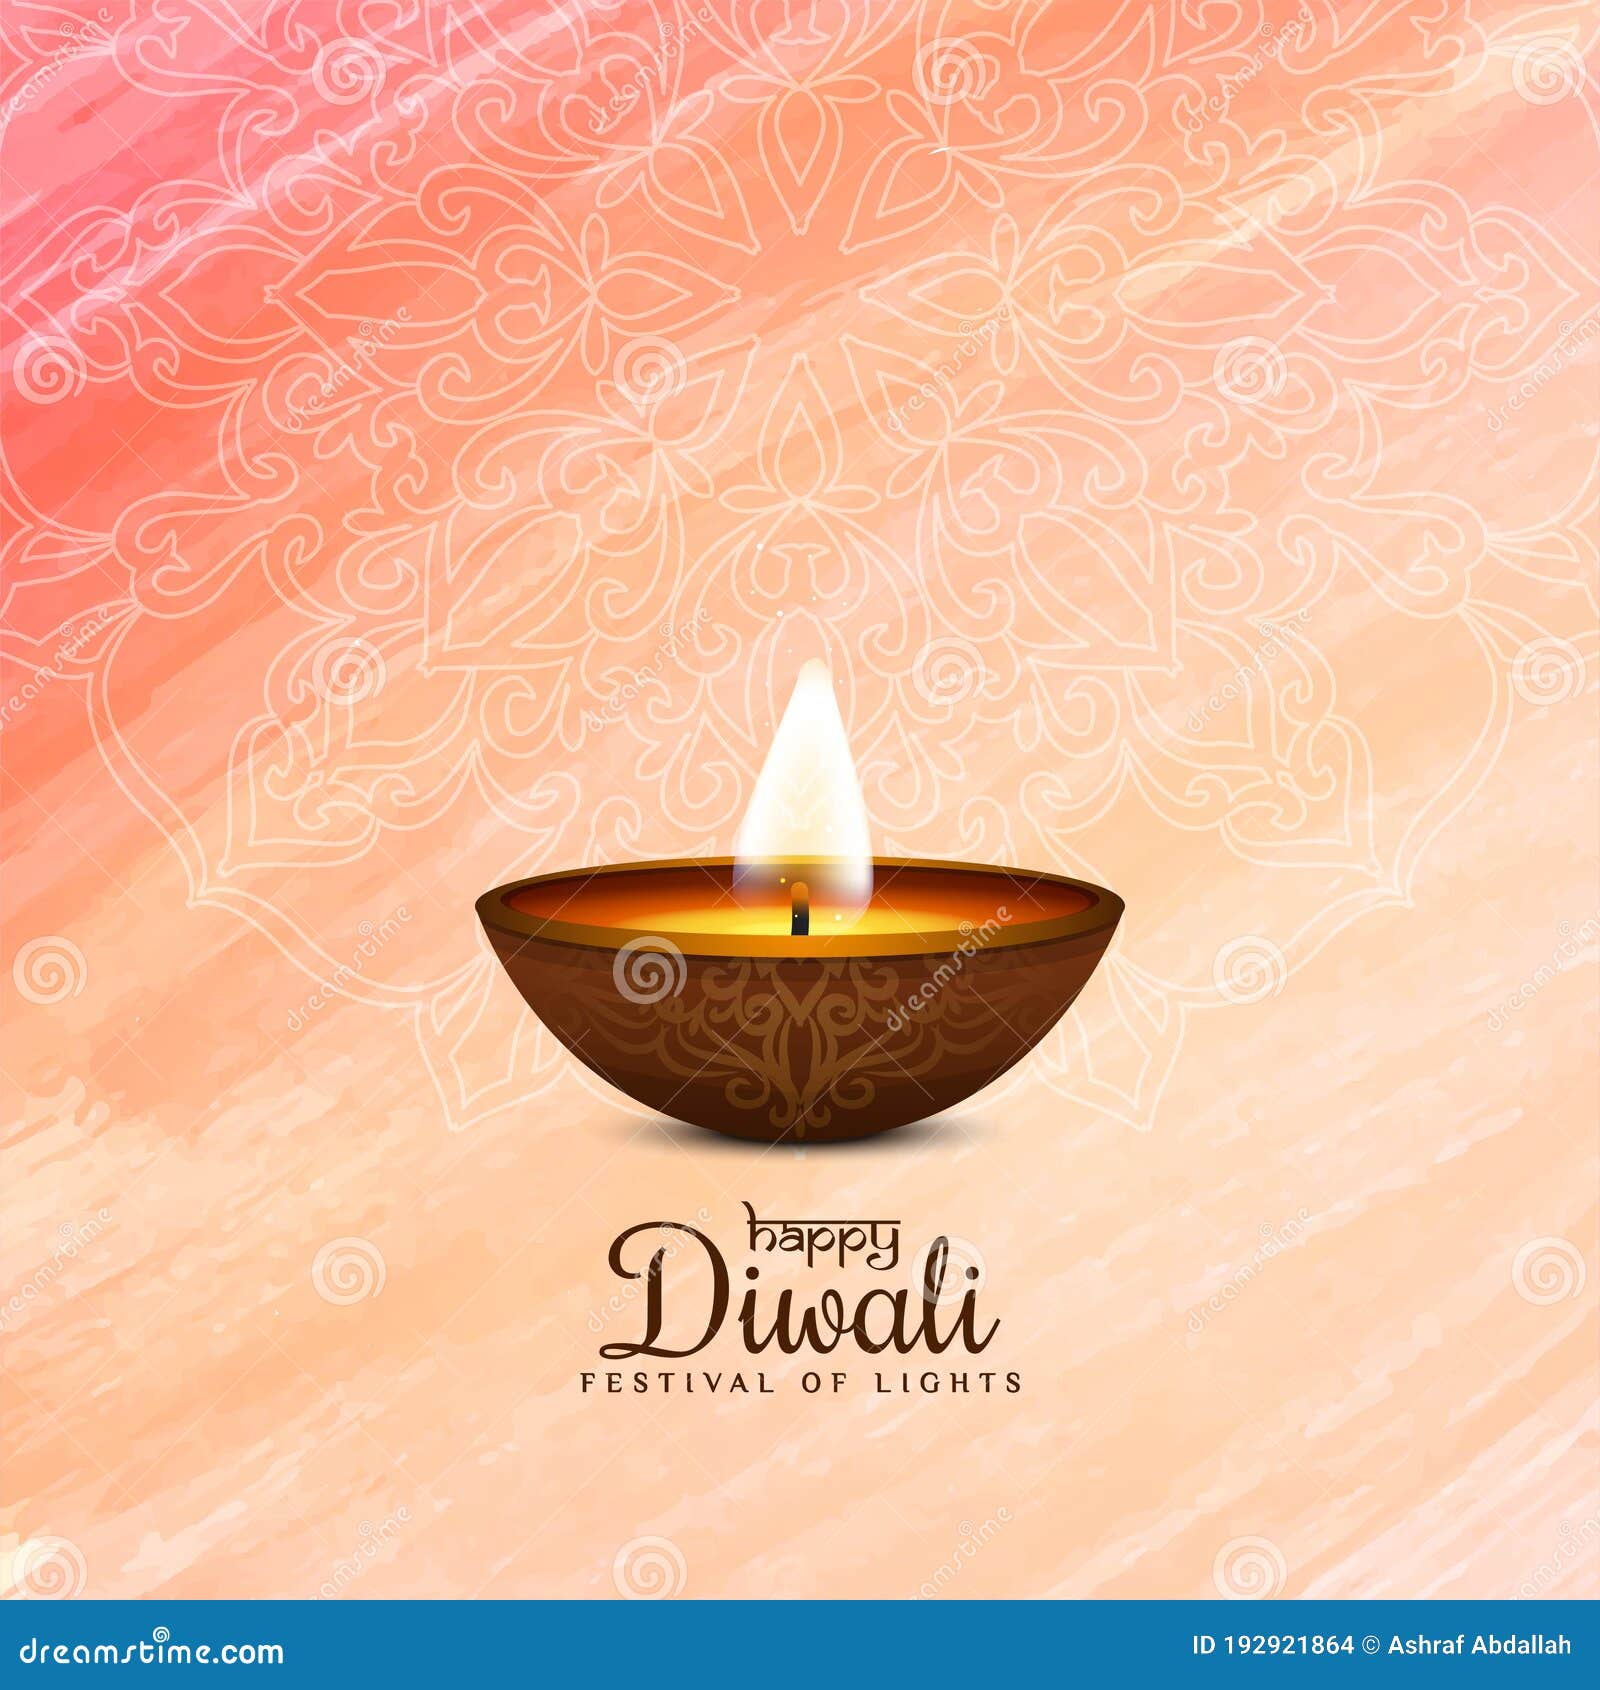 Religious Diwali: Tận hưởng không khí trang trọng và tâm linh của lễ hội Diwali. Khám phá sự đa dạng và phong phú của nền văn hoá và tín ngưỡng Hindu trong các bức ảnh tuyệt đẹp đầy cảm hứng. Chắc chắn bạn sẽ có những giây phút thư giãn và tận hưởng sự đẹp của lễ hội này.